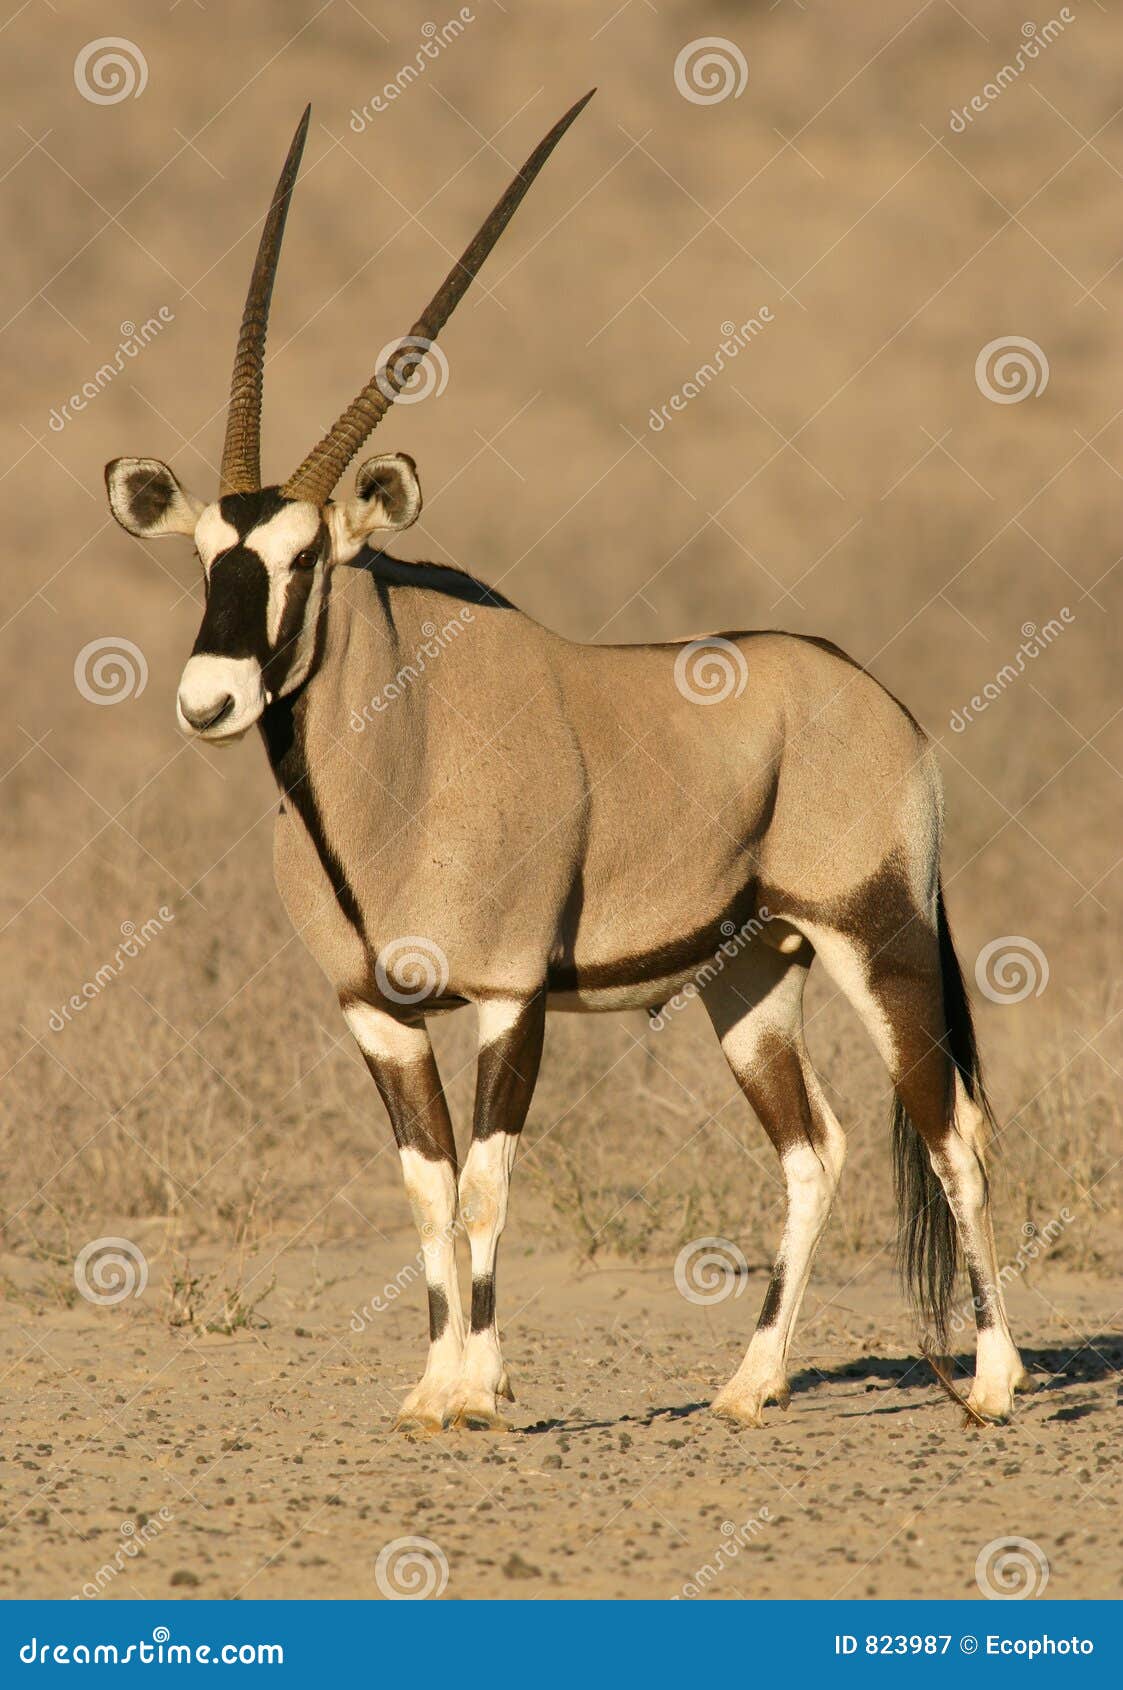 Gemsbokantilope stockbild. Bild von afrika, säugetier, unspoiled ...